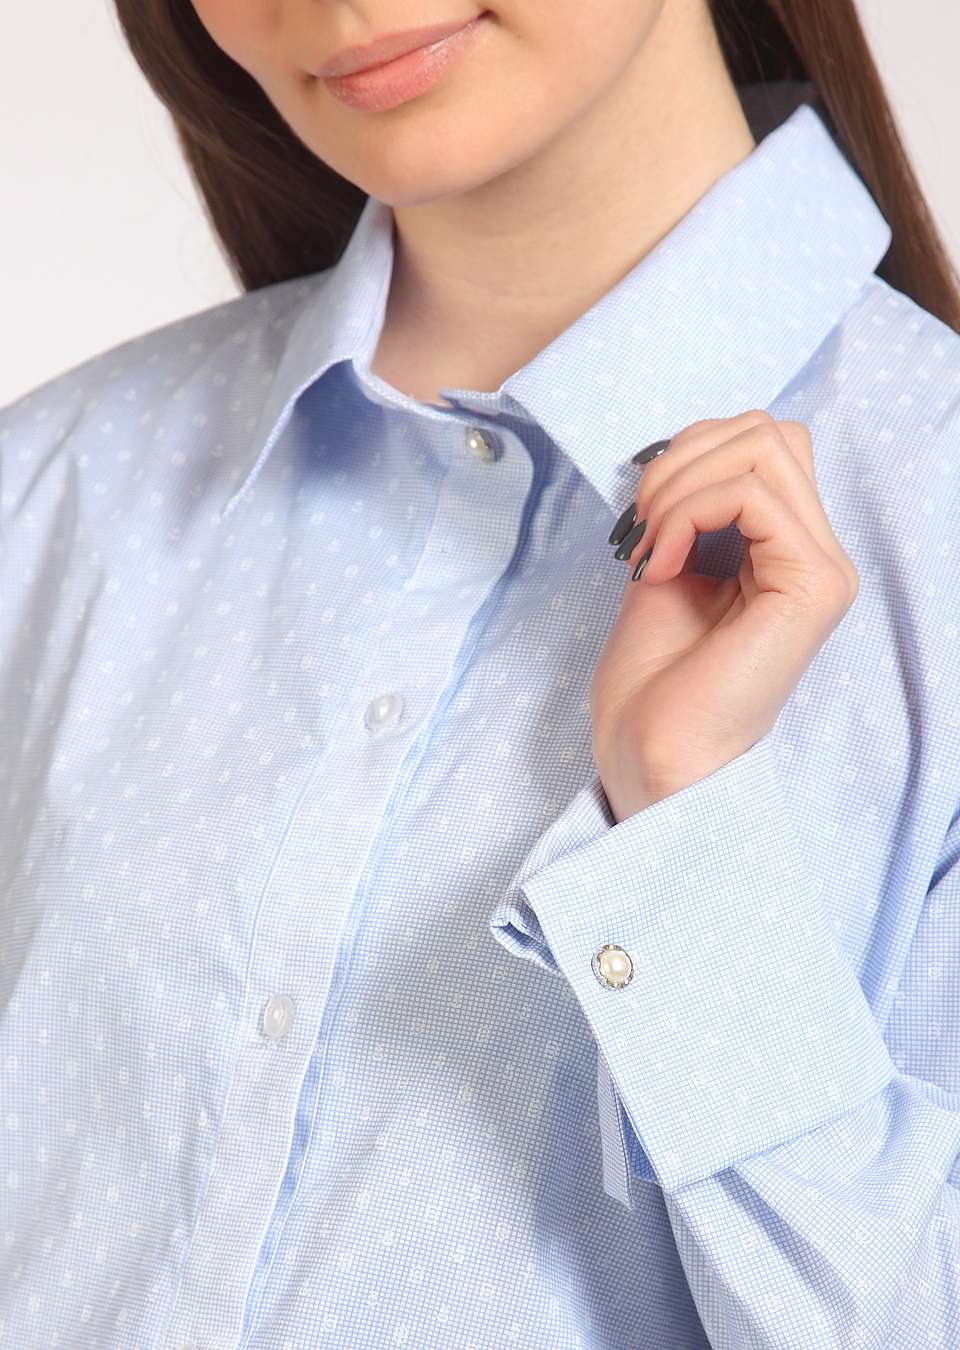 Блуза_рубашка для беременных